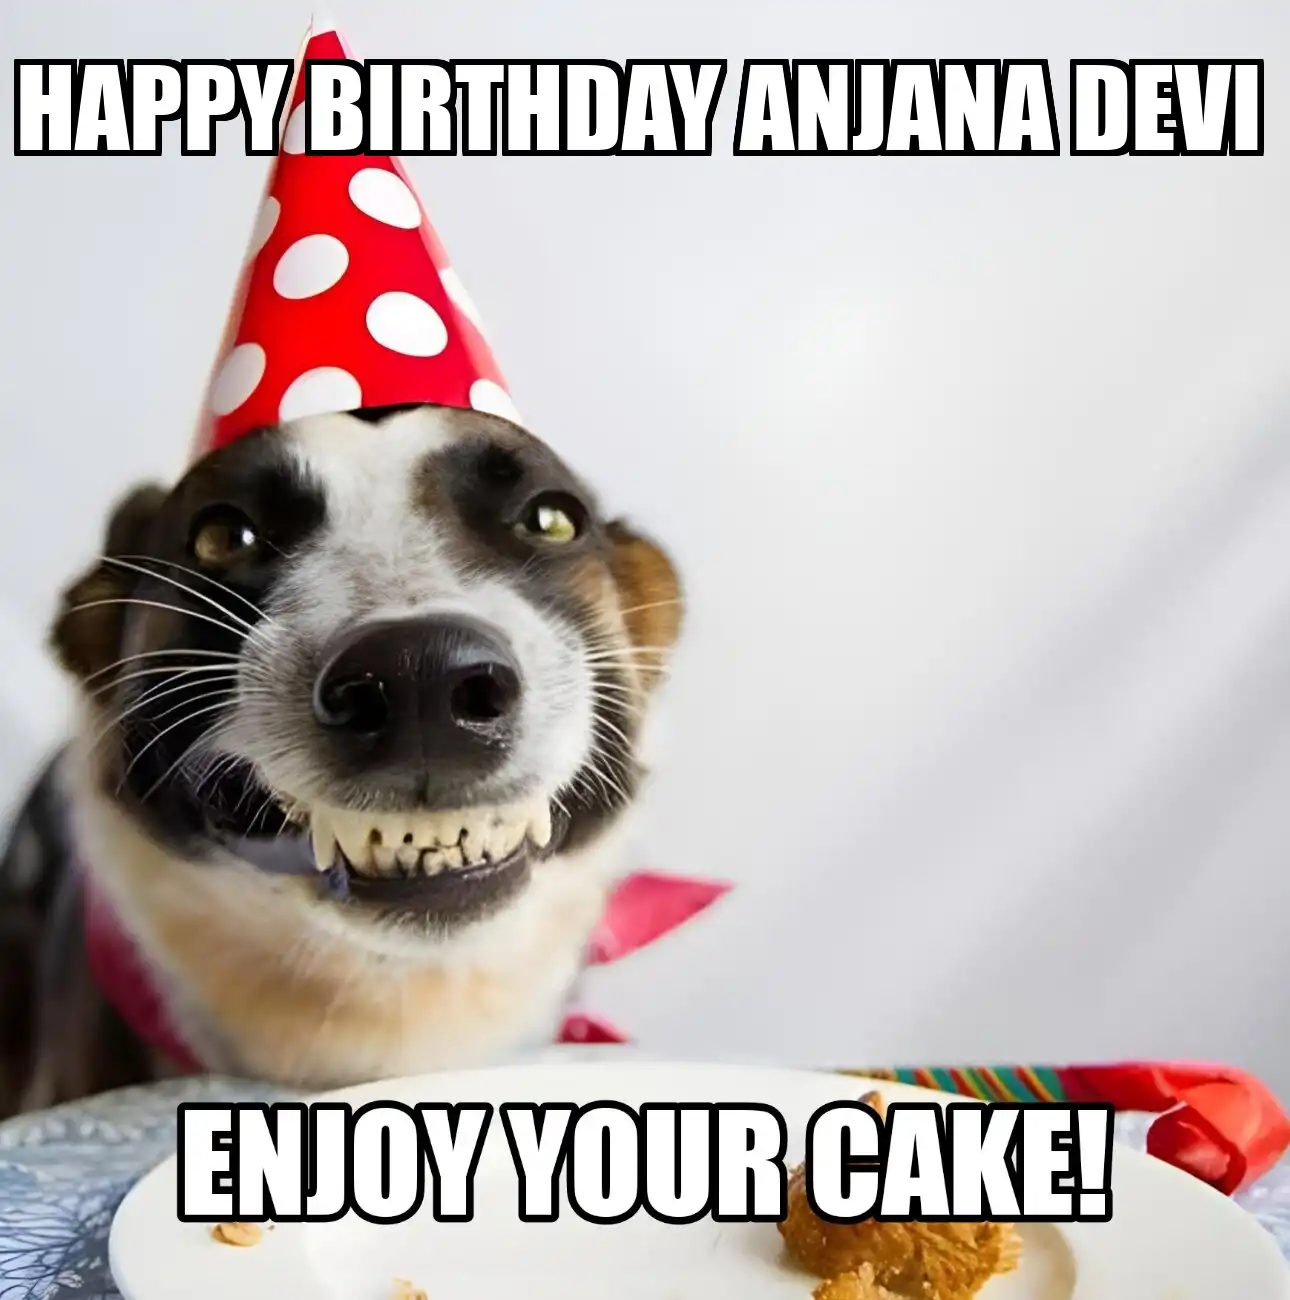 Happy Birthday Anjana devi Enjoy Your Cake Dog Meme